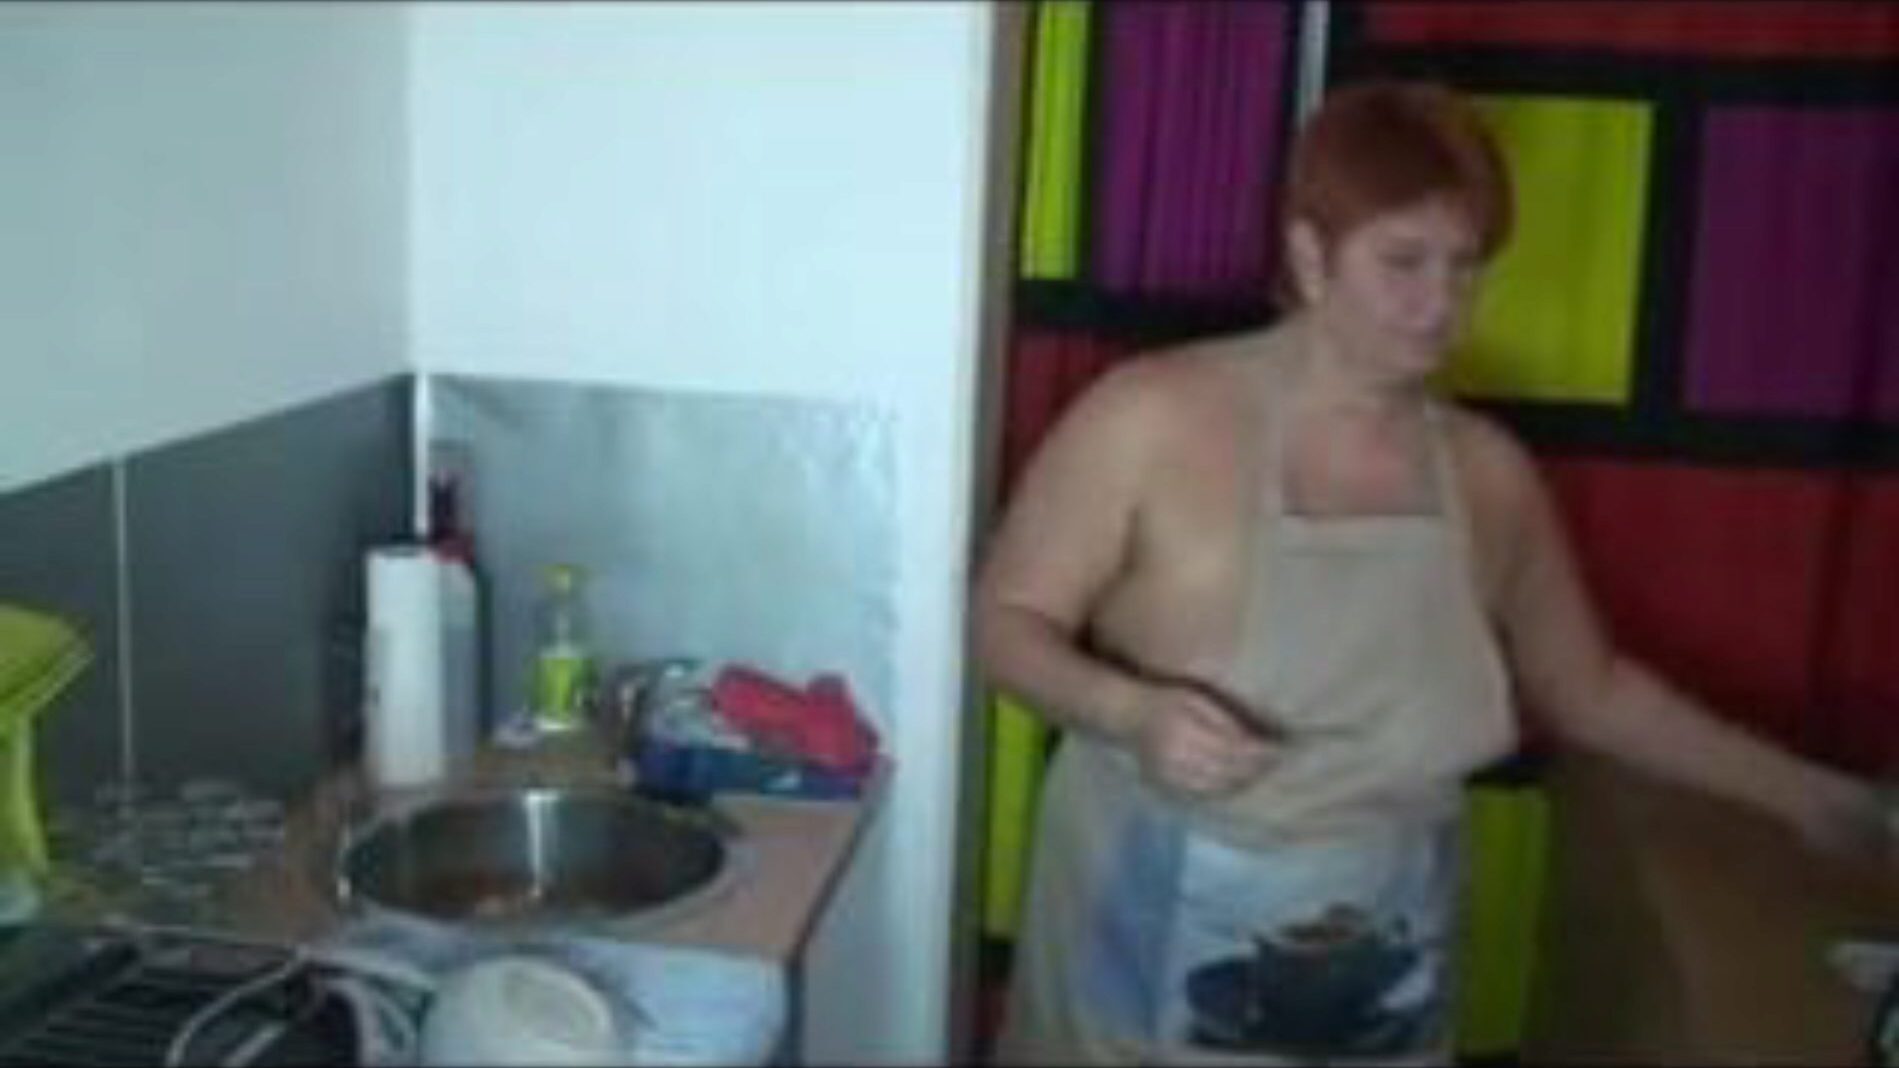 bij het afwassen in de keuken, gratis porno 55: xhamster kijk bij het afwassen in de keuken clip op xhamster, de gigantische seksbuis-site met tonnen gratis Duitse heetste en klinkende pornovideo's